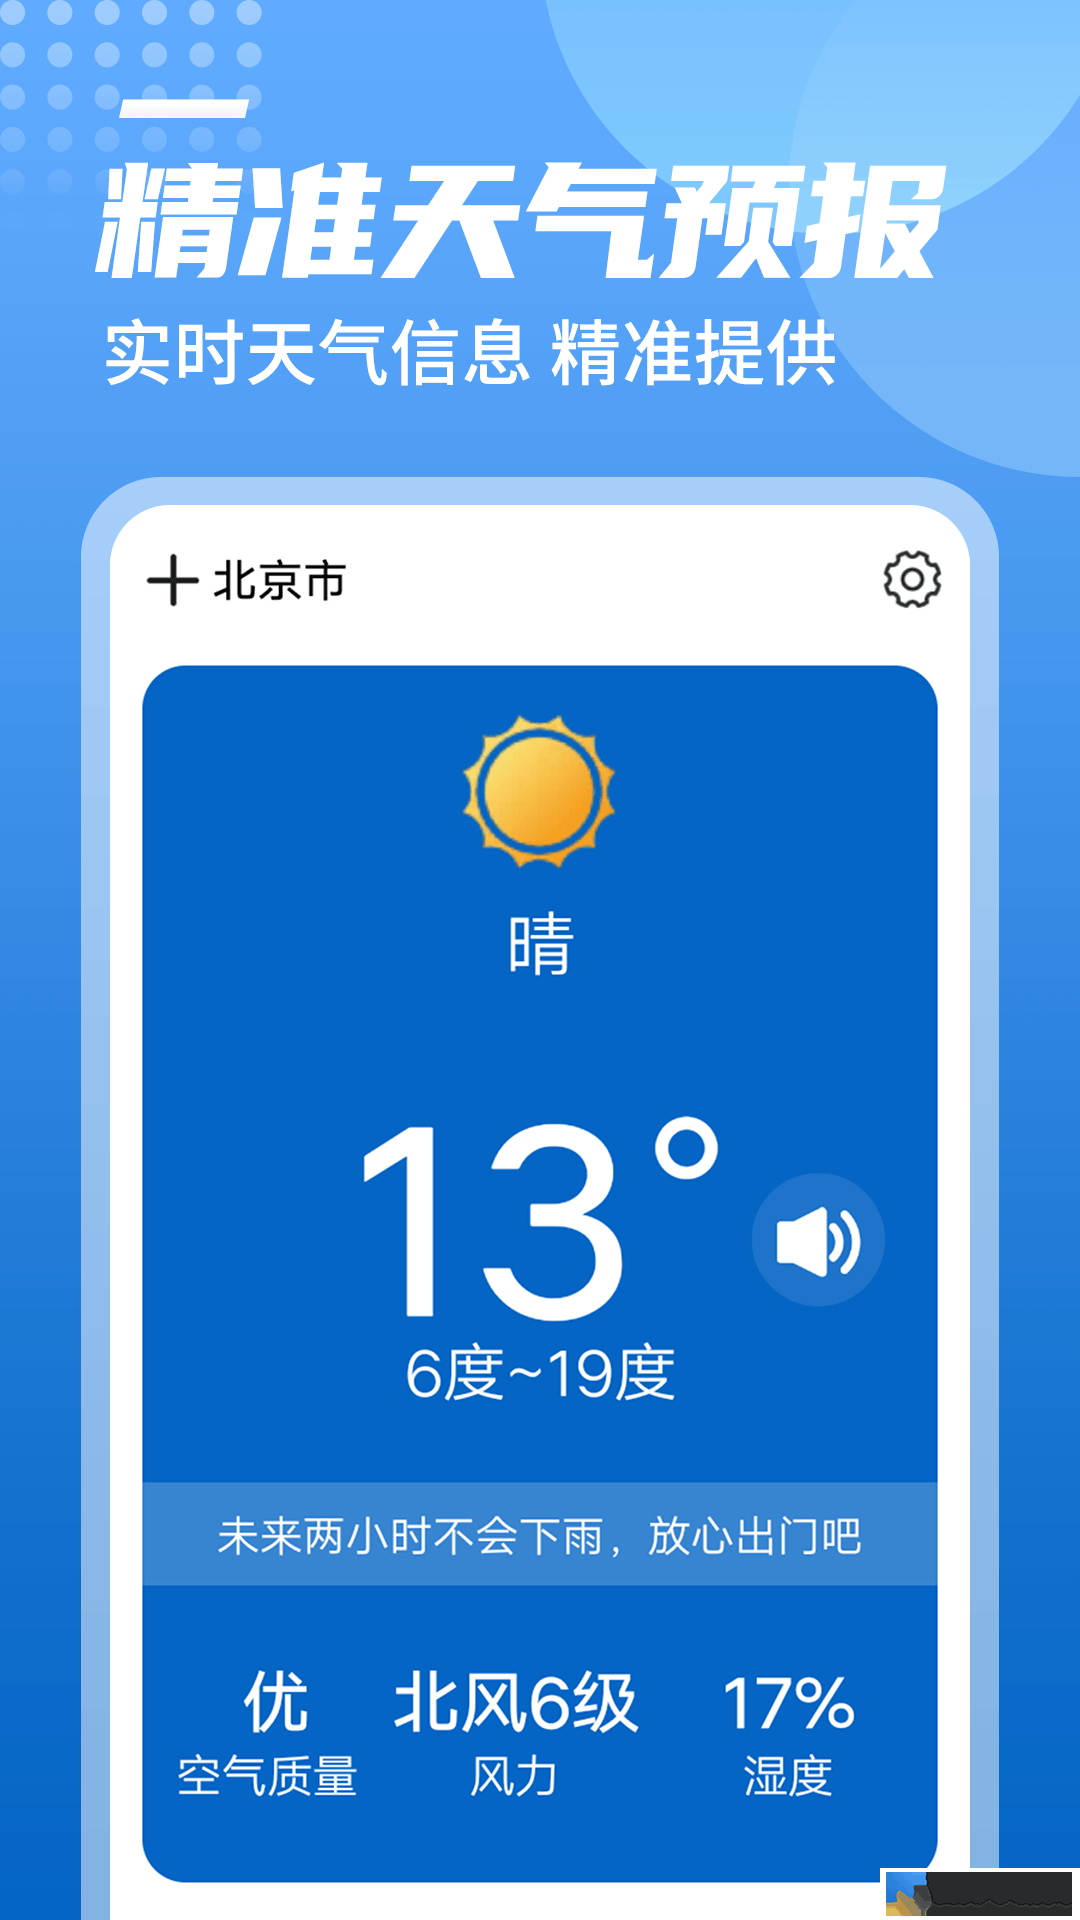 统一华夏天气预报